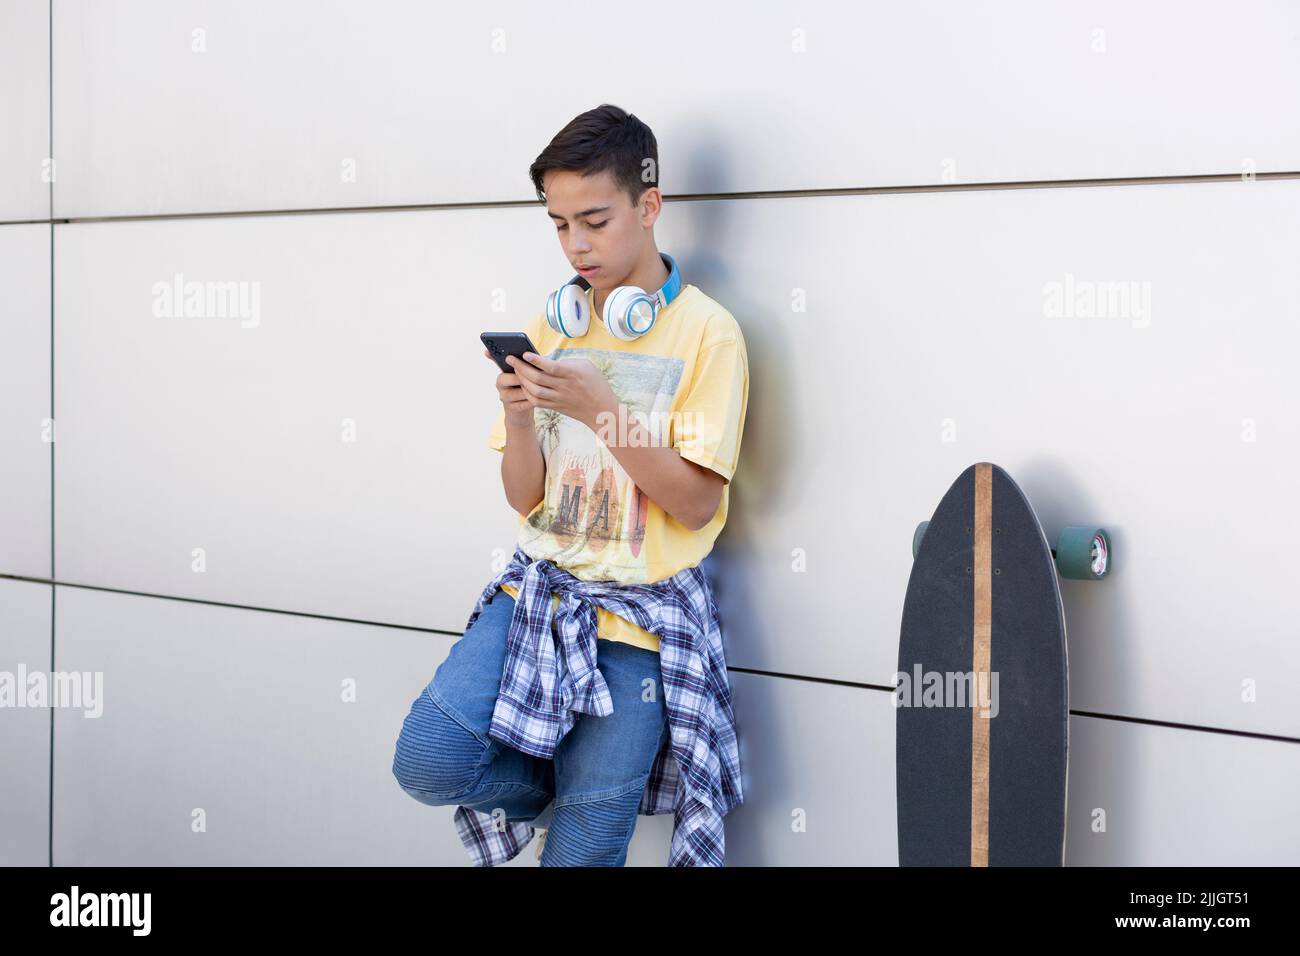 Adolescent du Caucase penché sur un mur à l'aide d'un téléphone portable. Espace pour le texte. Banque D'Images